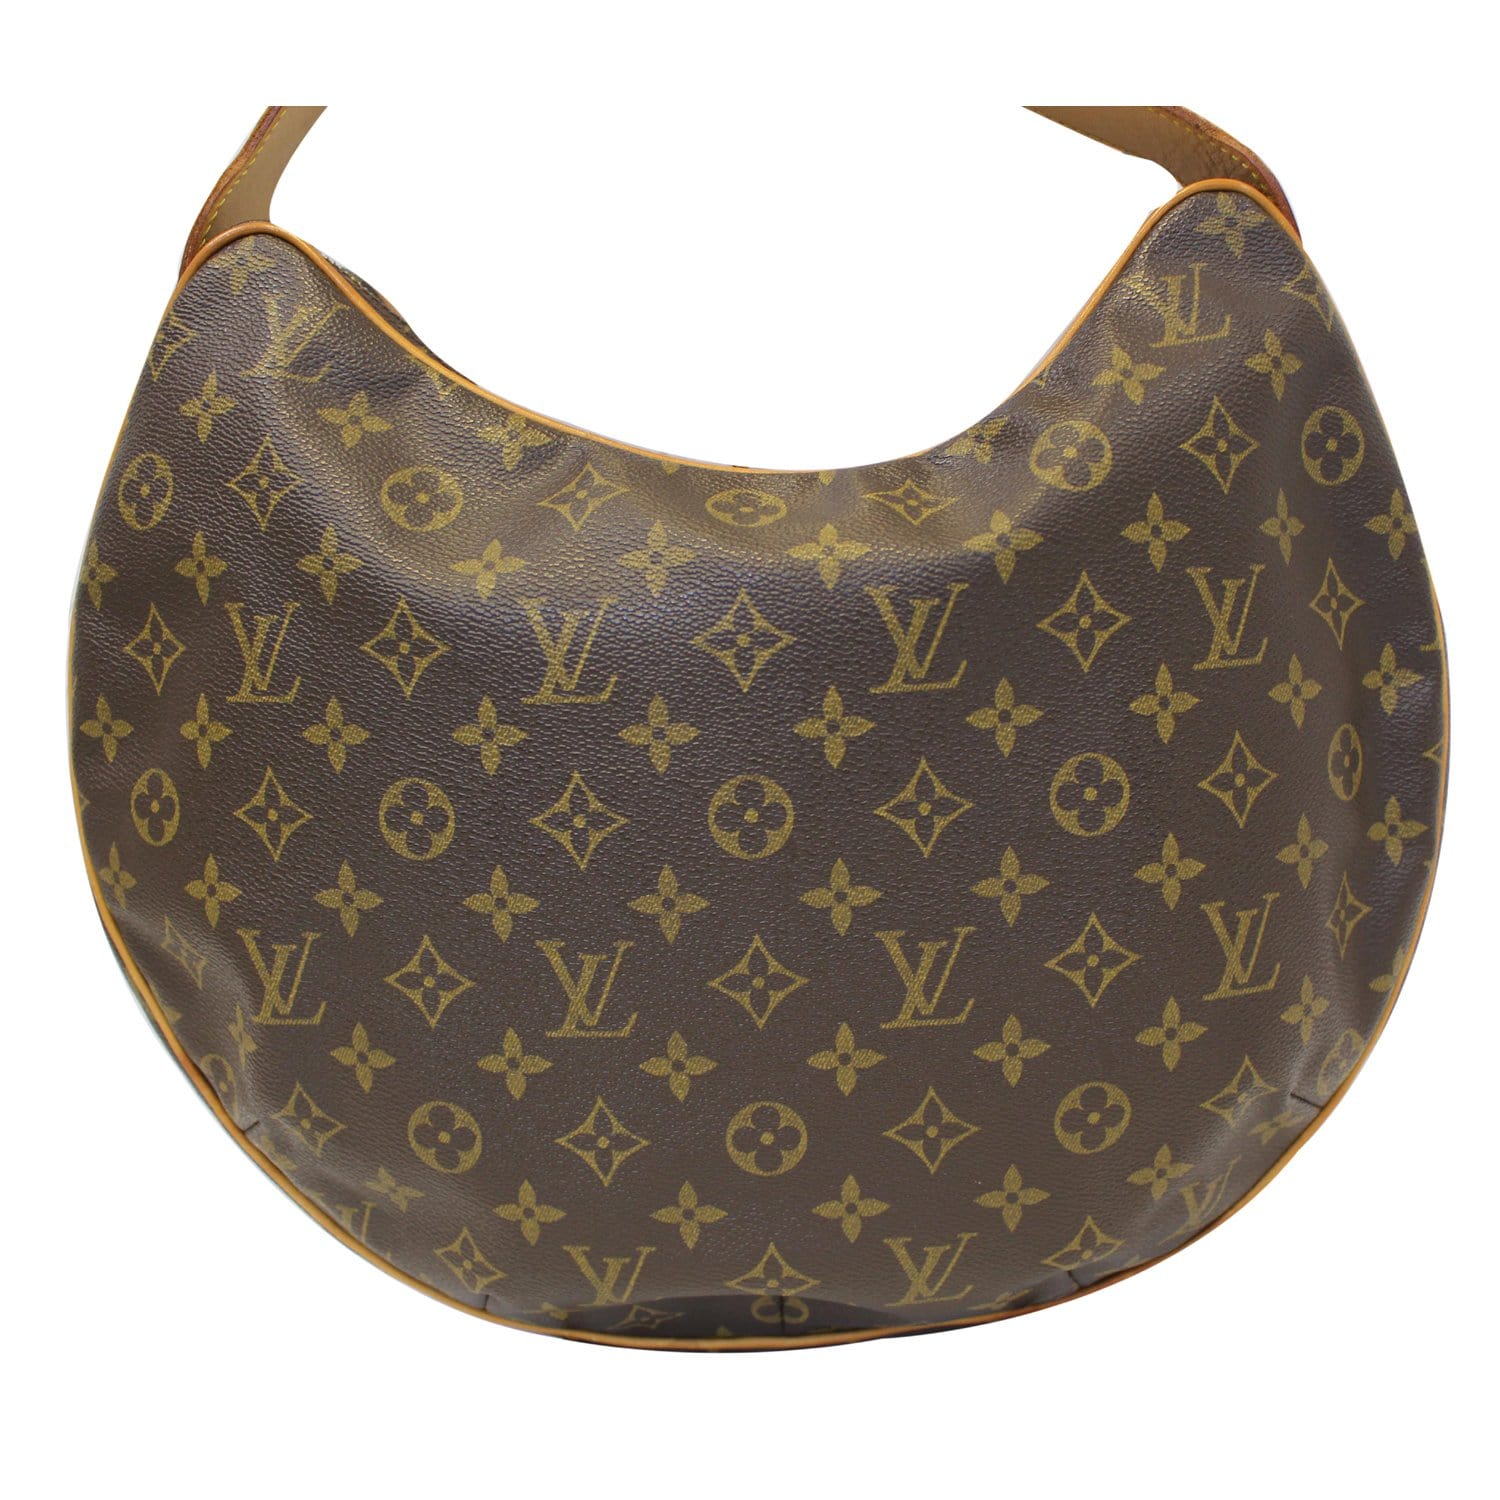 Louis Vuitton 2002 Pre-owned Monogram Croissant PM Shoulder Bag